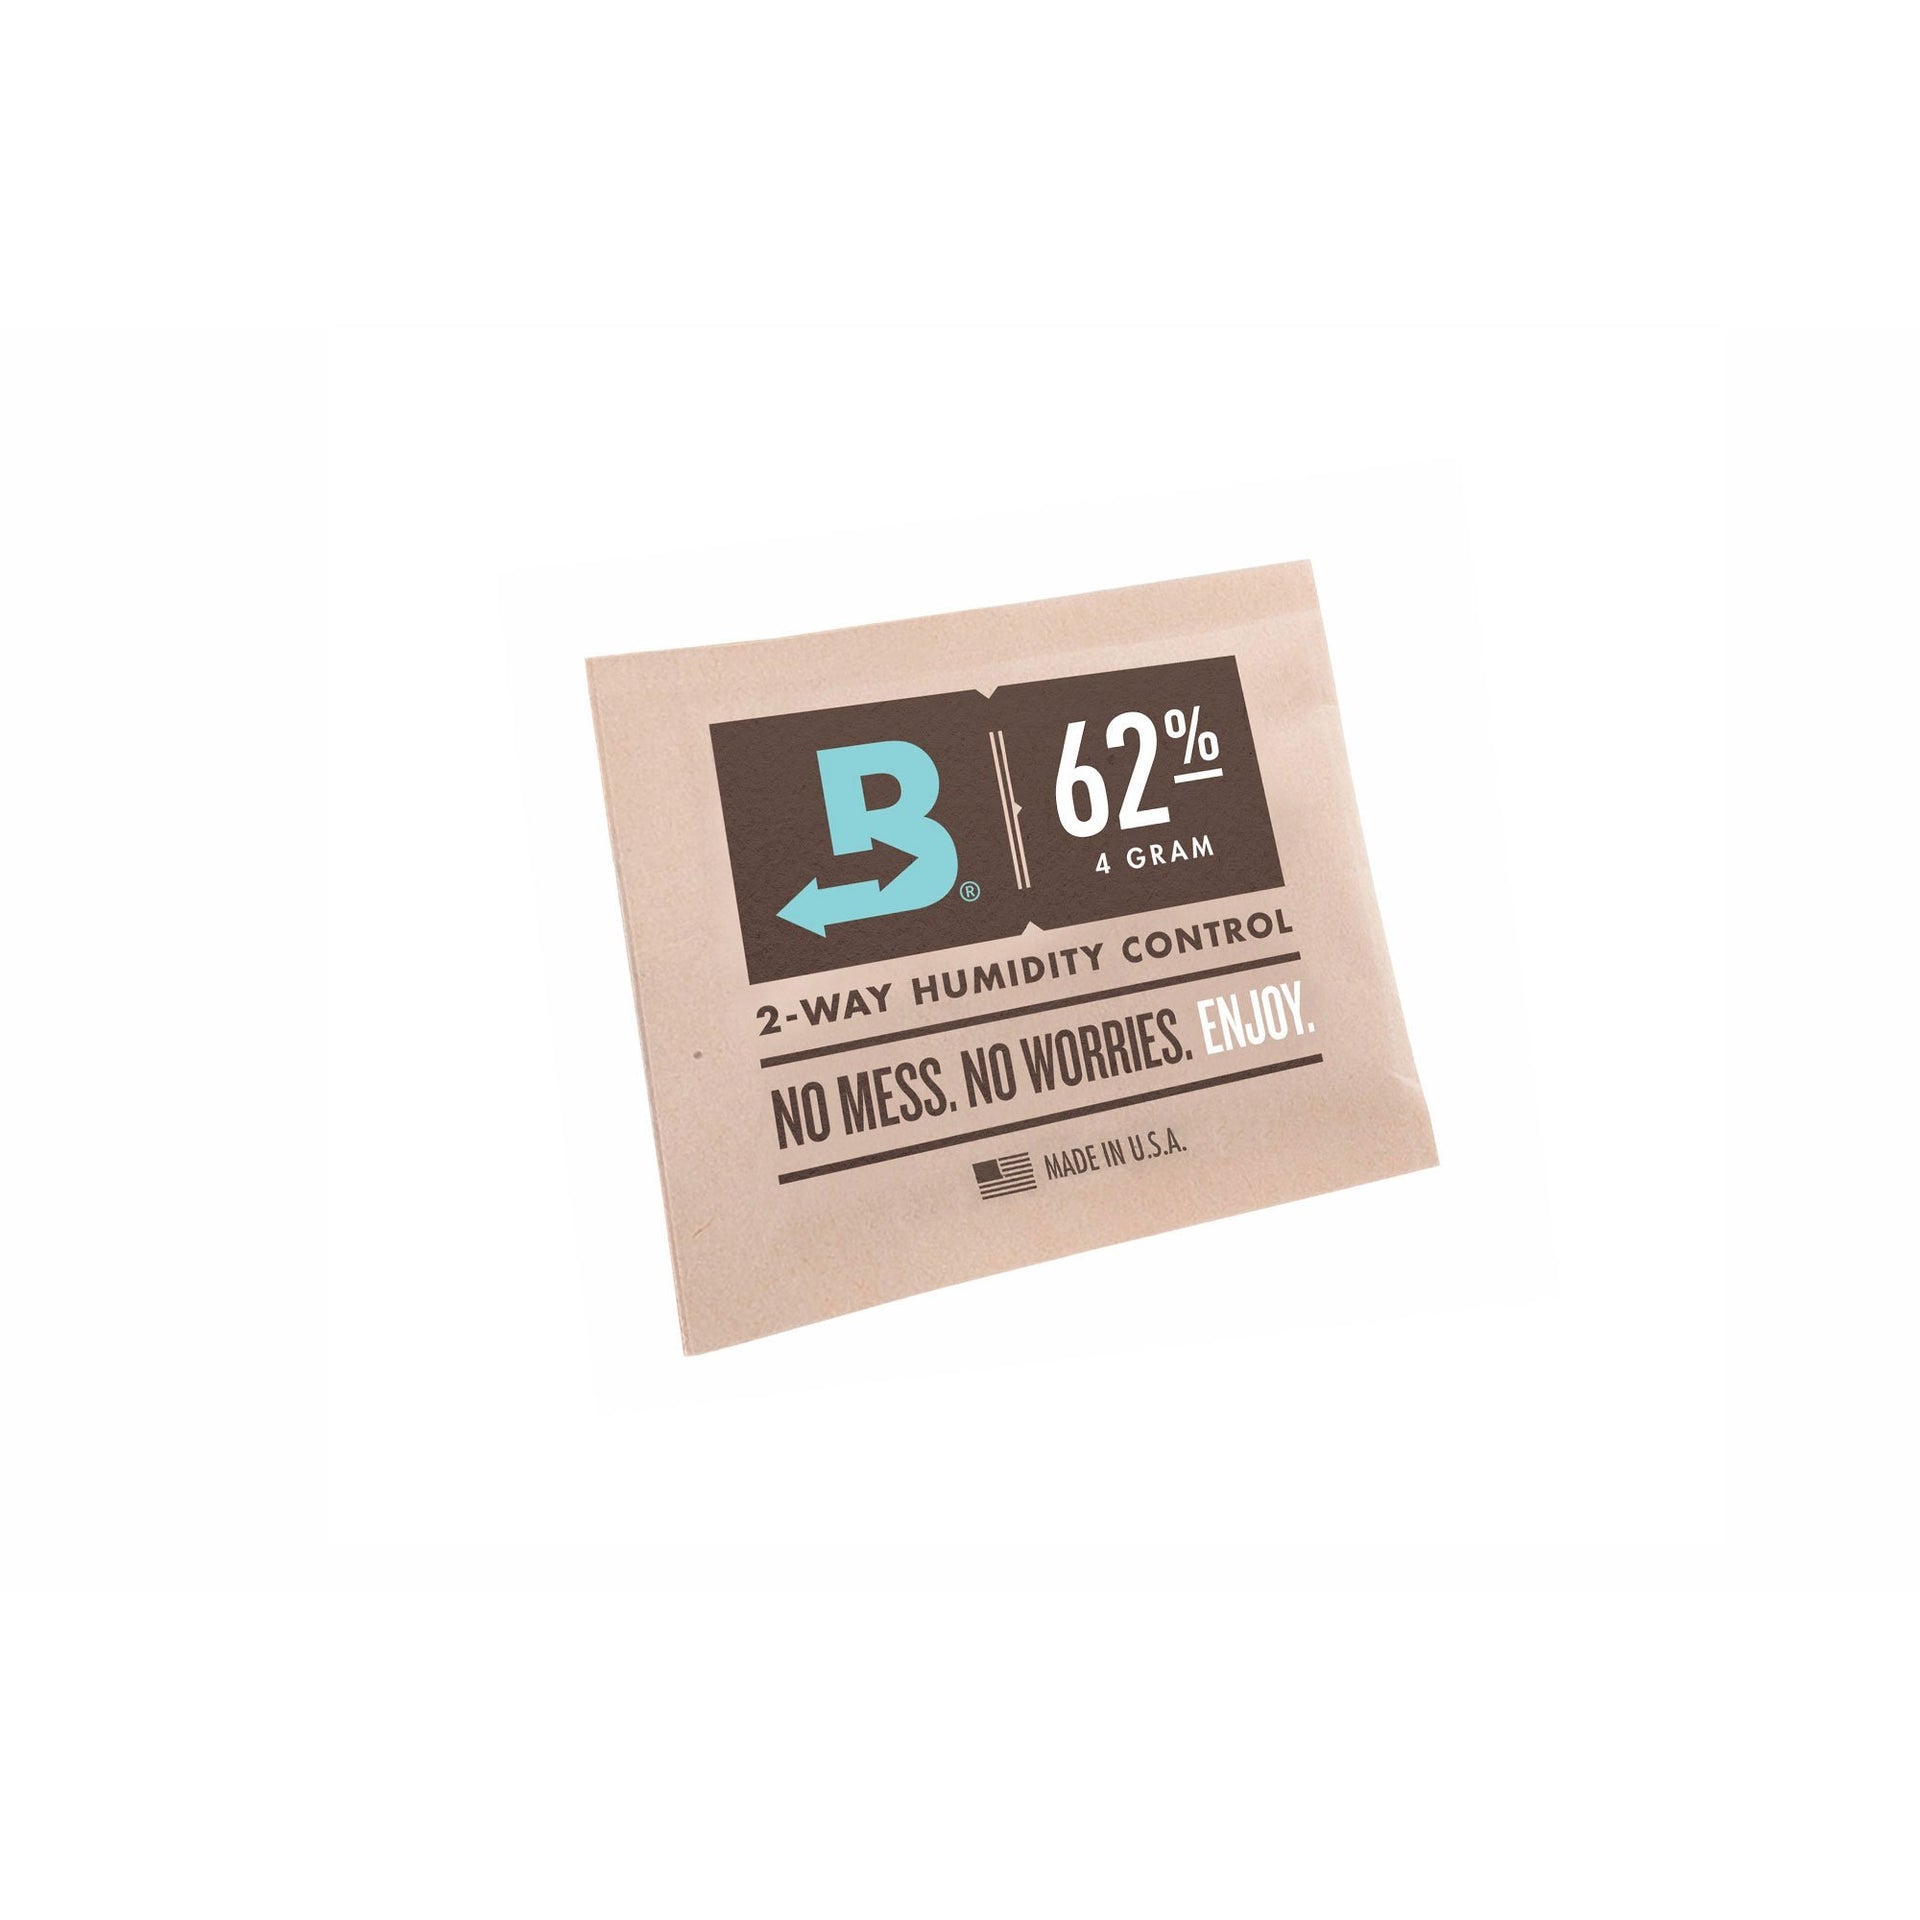 Boveda Humidipaks - 62% Humidity Control 10-Pack / $ 12.99 at 420 Science